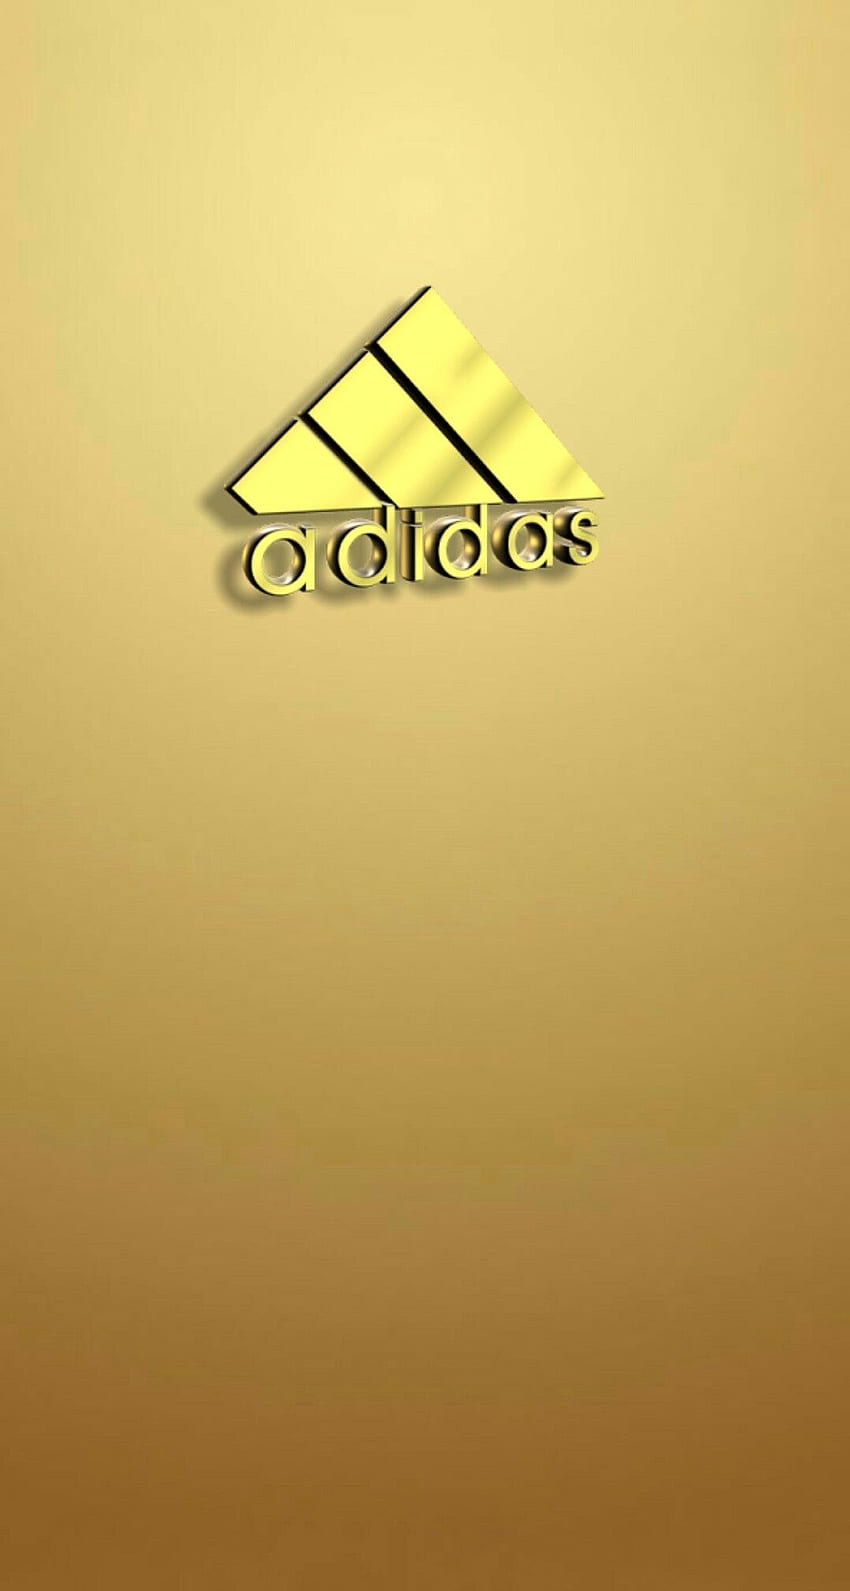 Biểu tượng adidas vàng sẽ đưa bạn đến với thế giới của những ngôi sao sân cỏ huyền thoại. Với màu sắc quen thuộc và thiết kế đơn giản nhưng rất đẹp mắt, bạn sẽ cảm thấy như đang được sống trong một thế giới của những chiến binh thể thao.